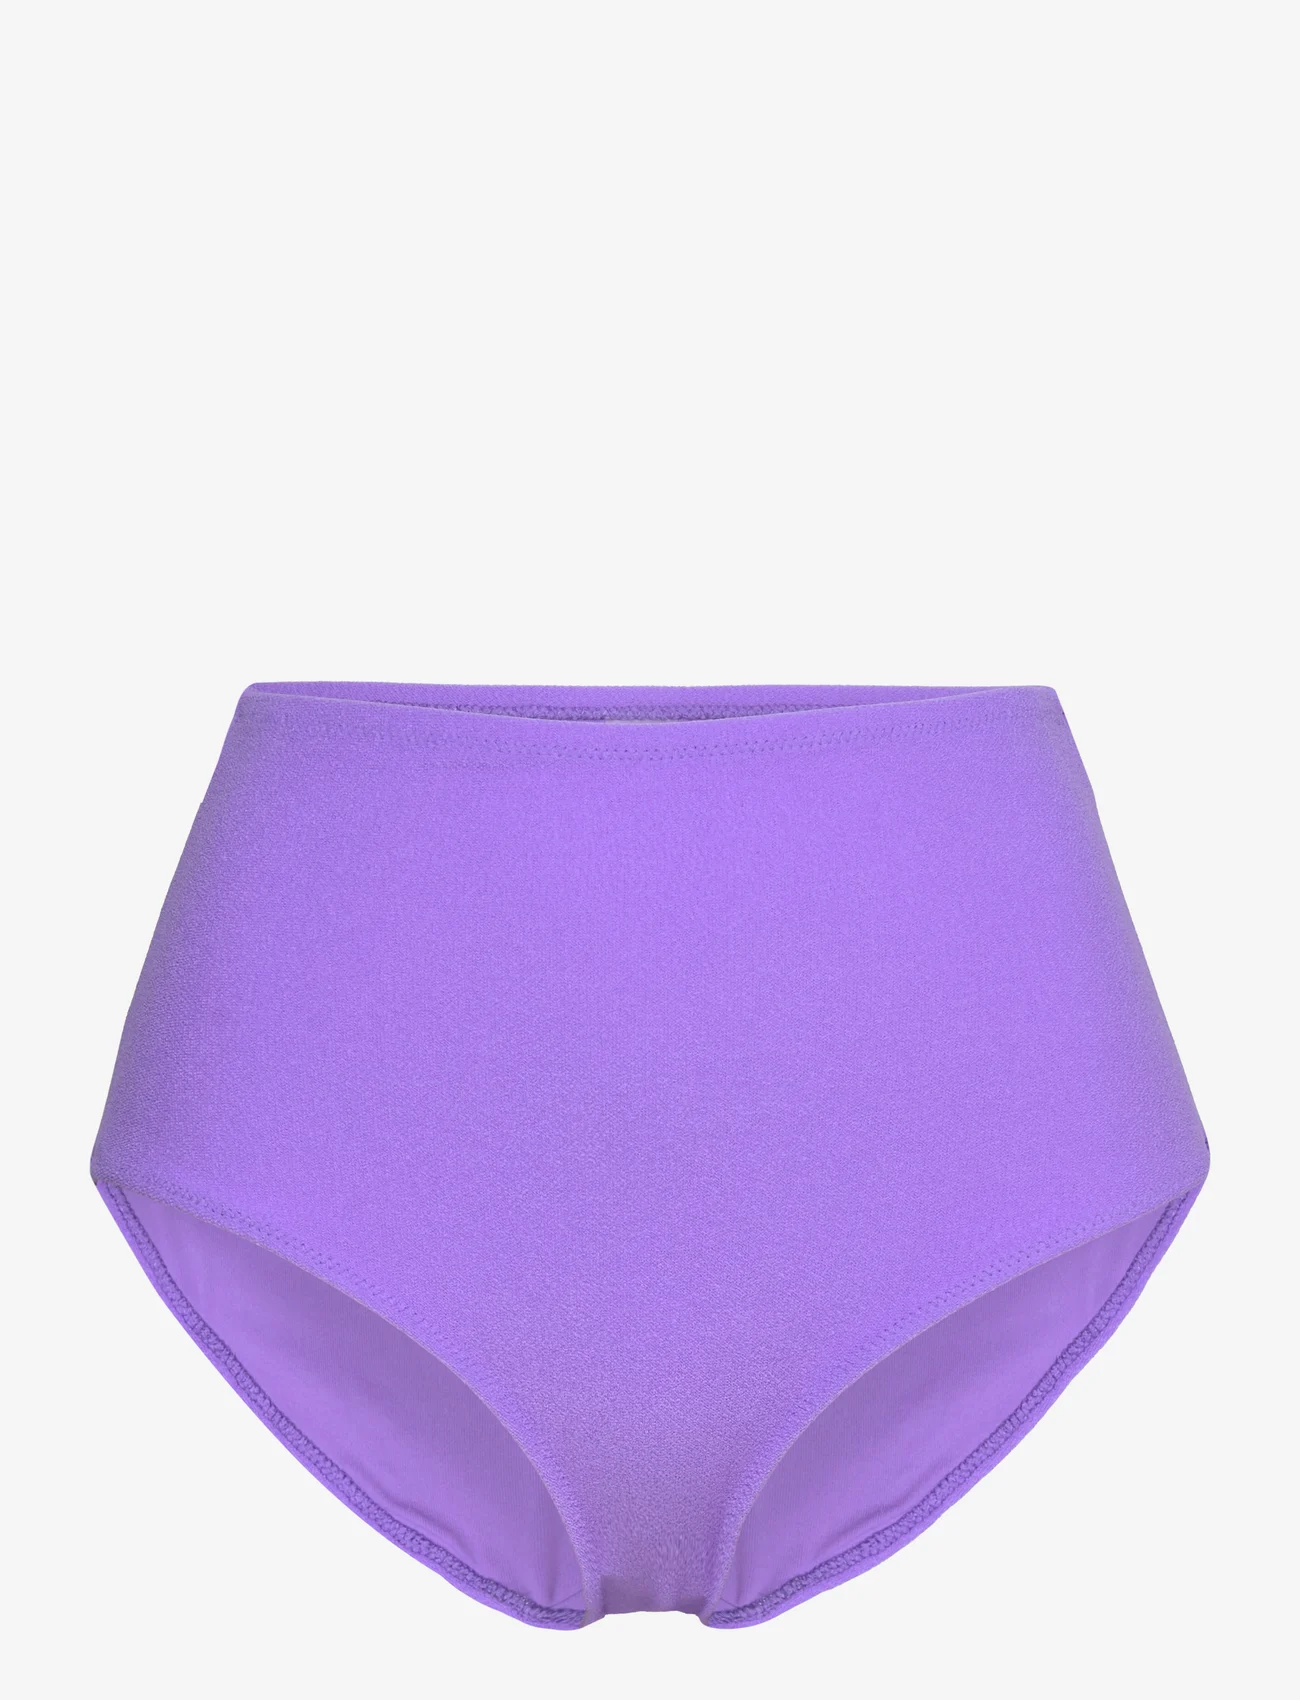 Understatement Underwear - Highwaist Bikini Briefs - bikinihosen mit hoher taille - electric lilac - 0